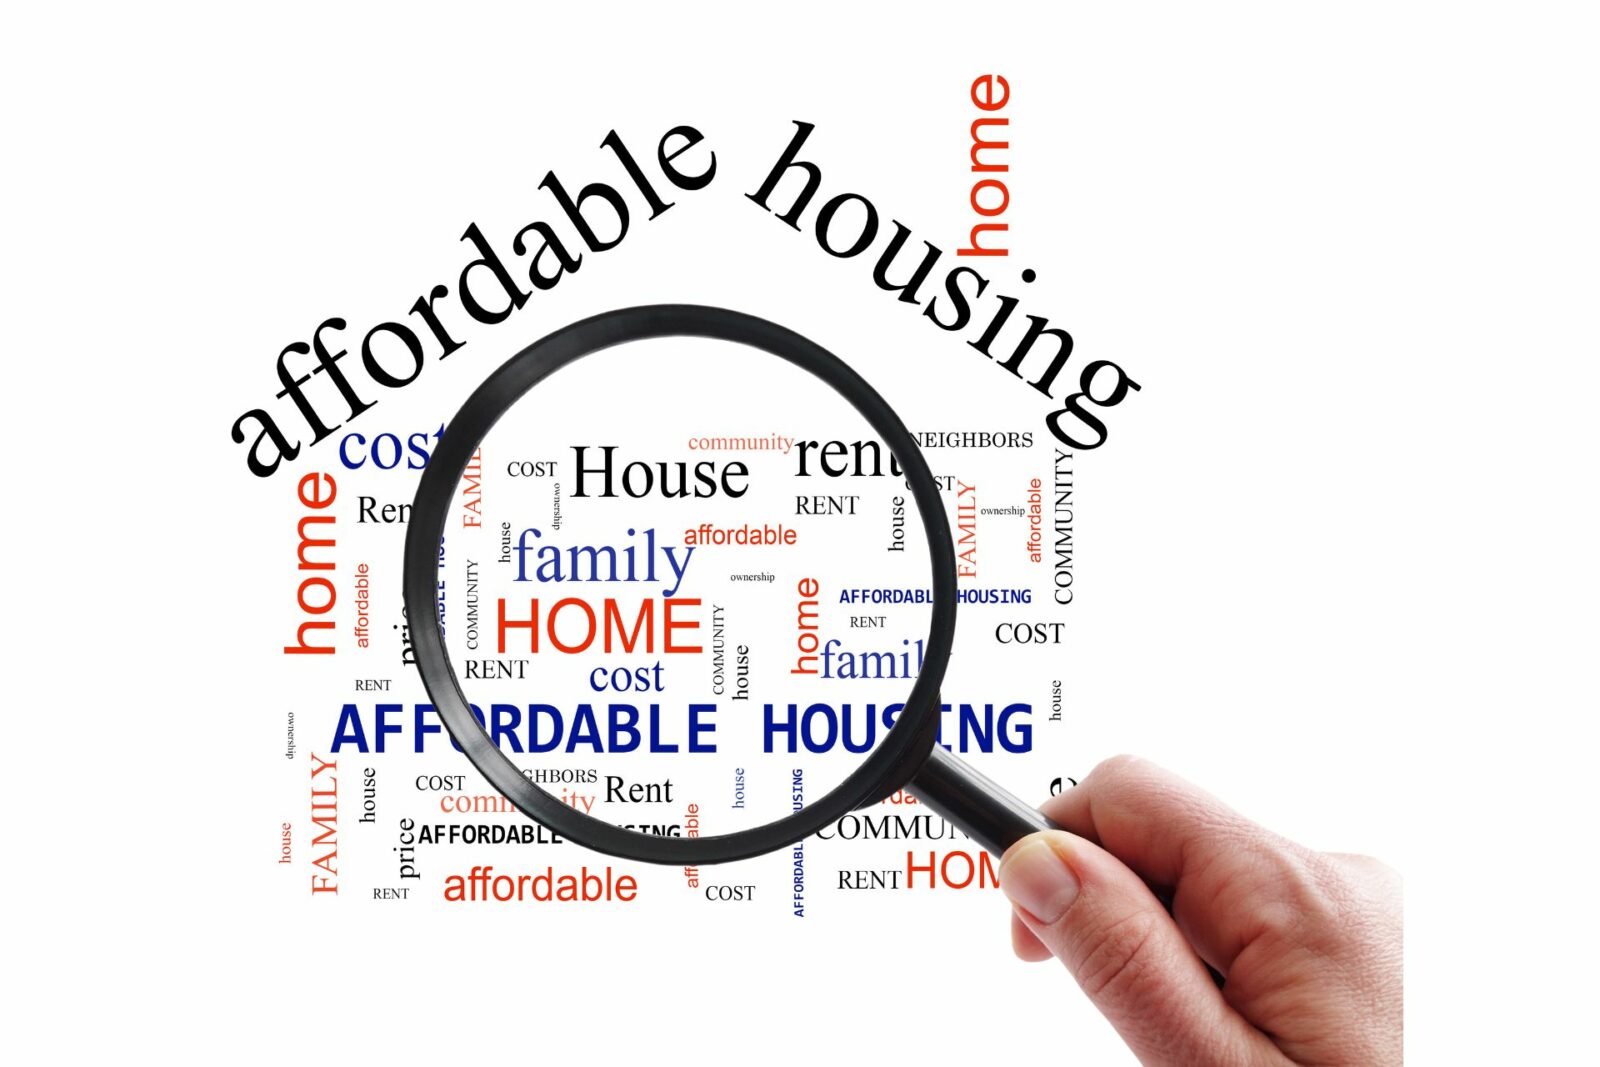 Homebuying Affordability